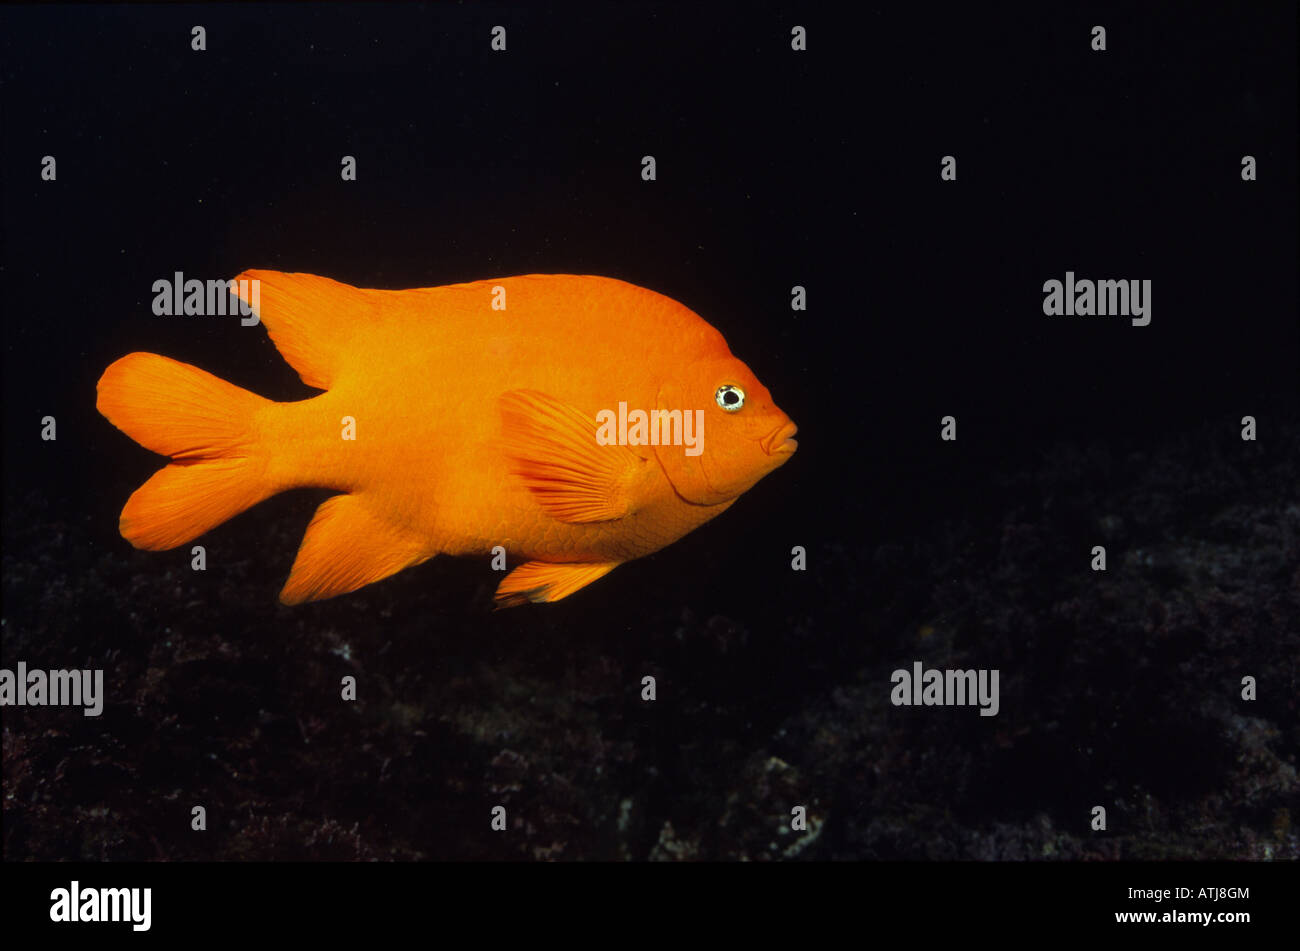 Pesce Garibaldi kelp forest California, subacquea, pesce, colorato, il colore arancione, pesce, scuba diving, oceano mare, vita marina Foto Stock